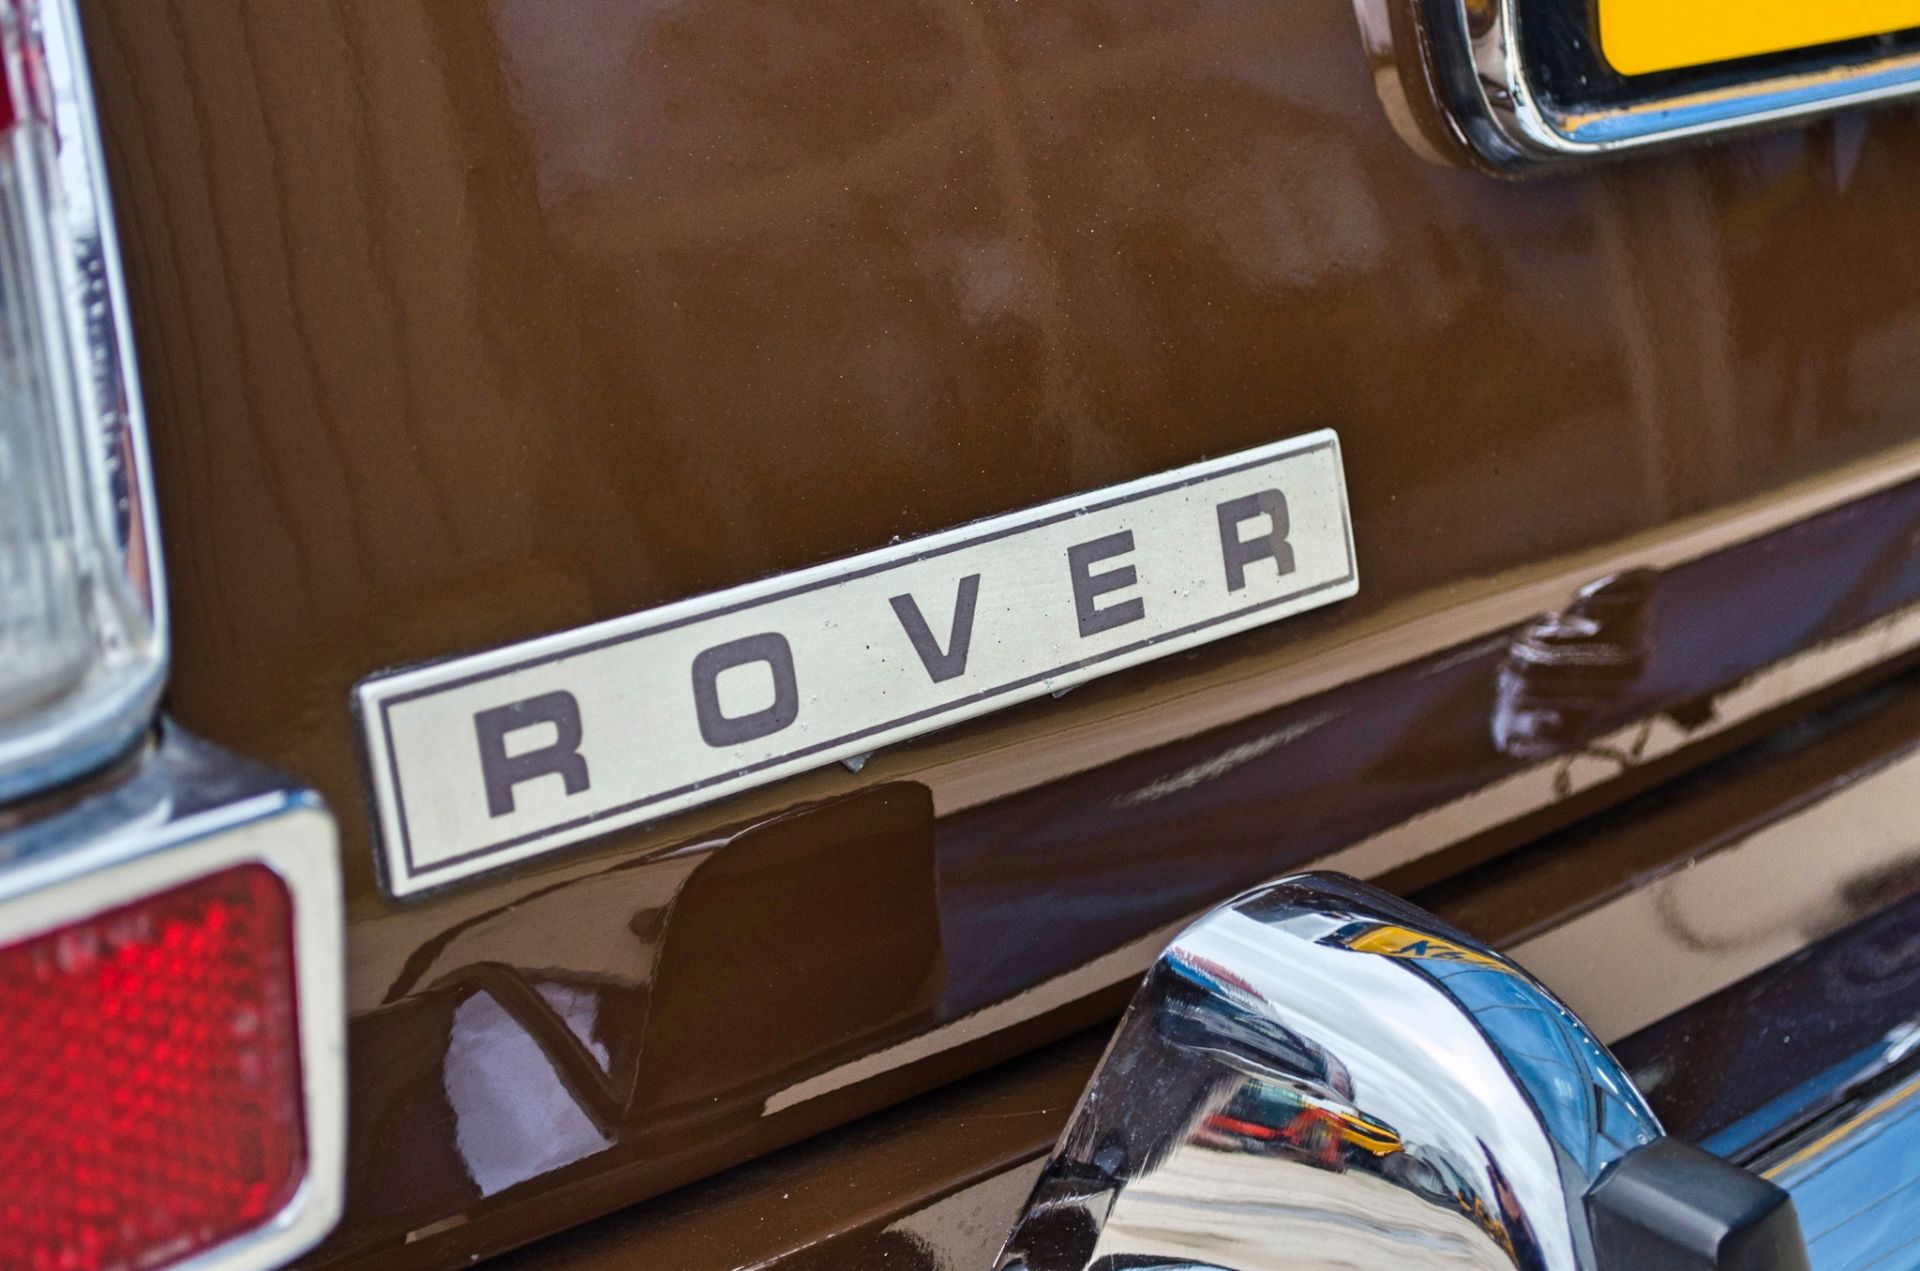 1975 Rover 2200TC 2.2 litre 4 door saloon - Image 25 of 53